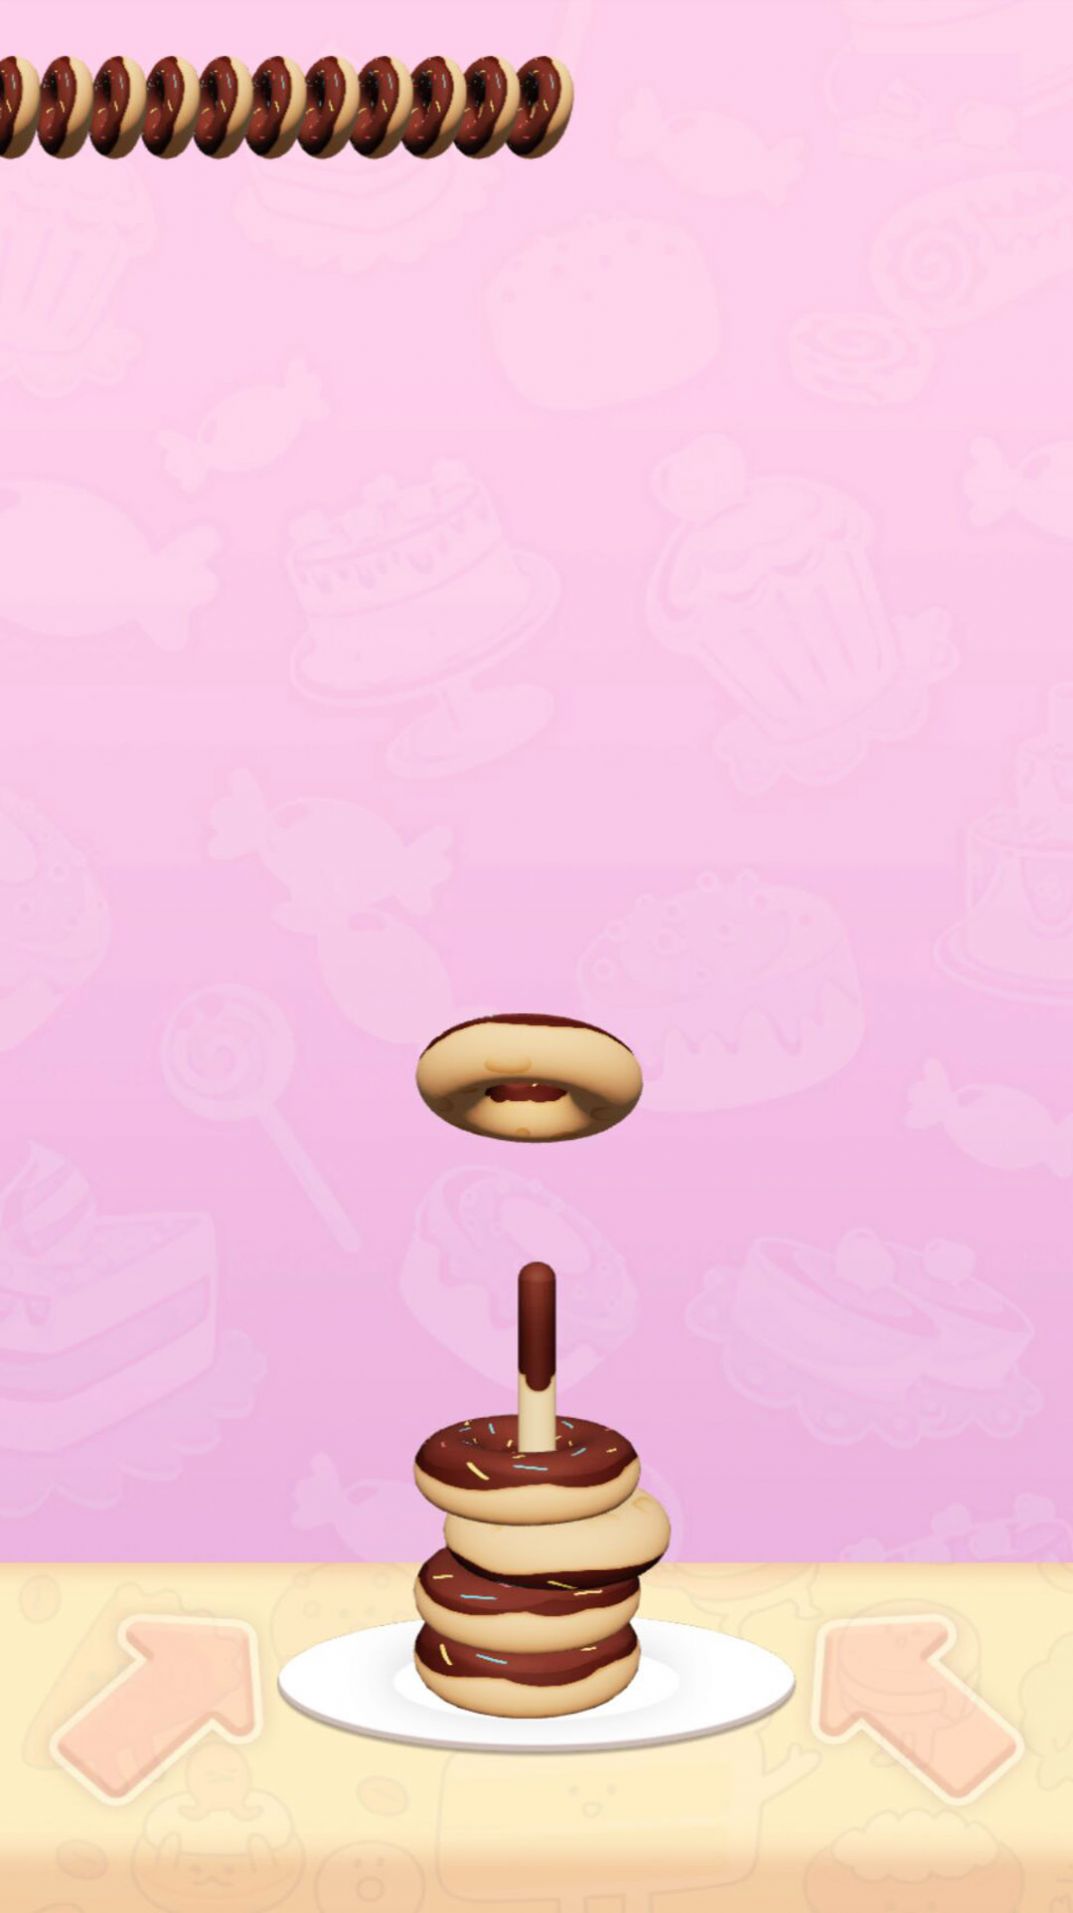 解压甜甜圈游戏安卓版 v1.0截图2